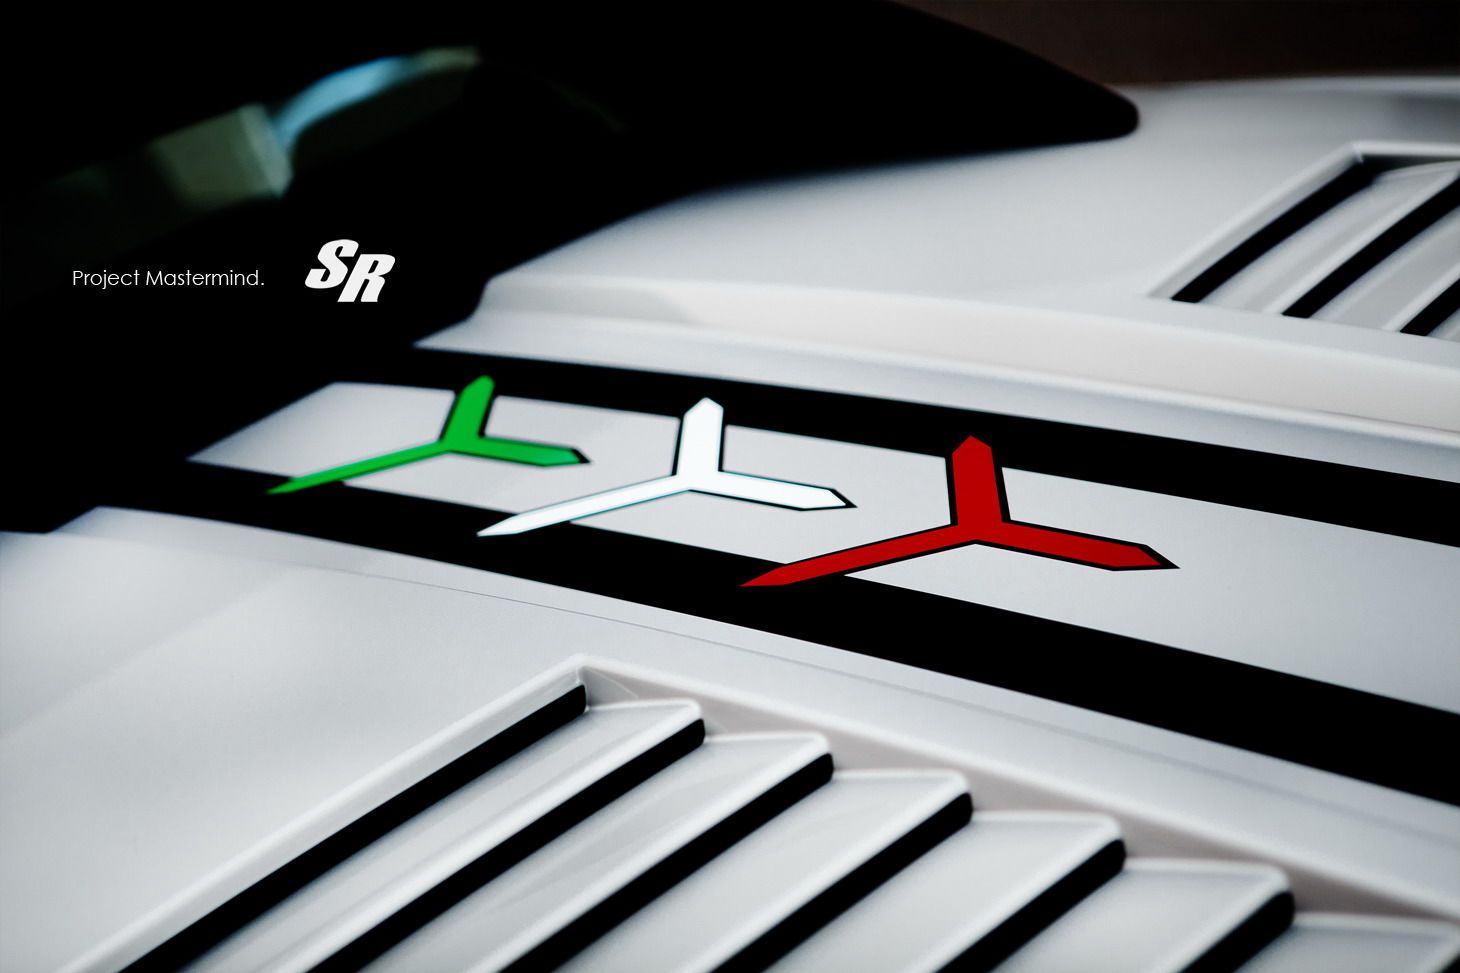 2012 Lamborghini Gallardo Project Mastermind by SR Auto Group